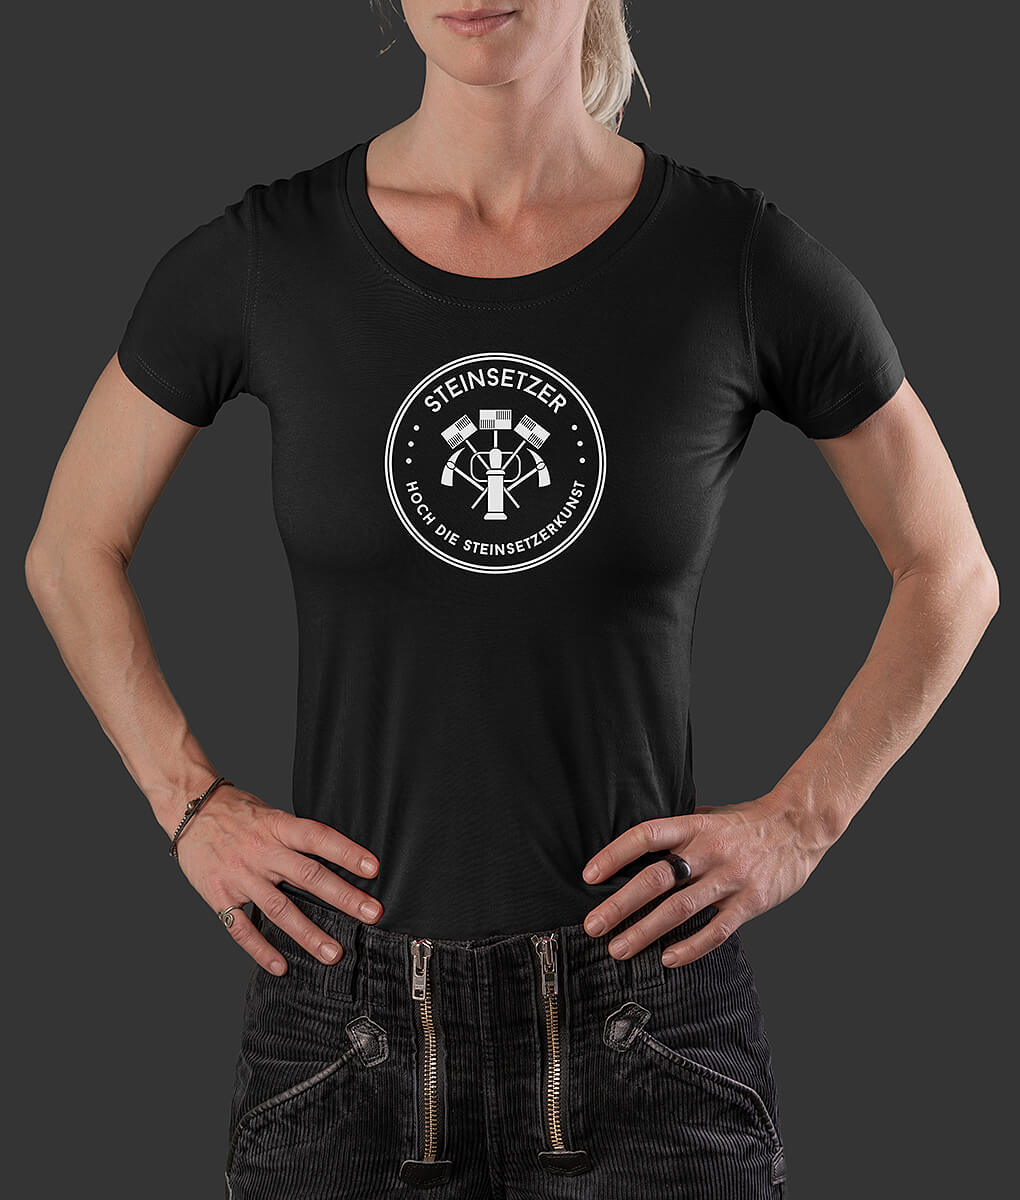 T-Shirt Louisa Siegel Steinsetzer Brust schwarz S